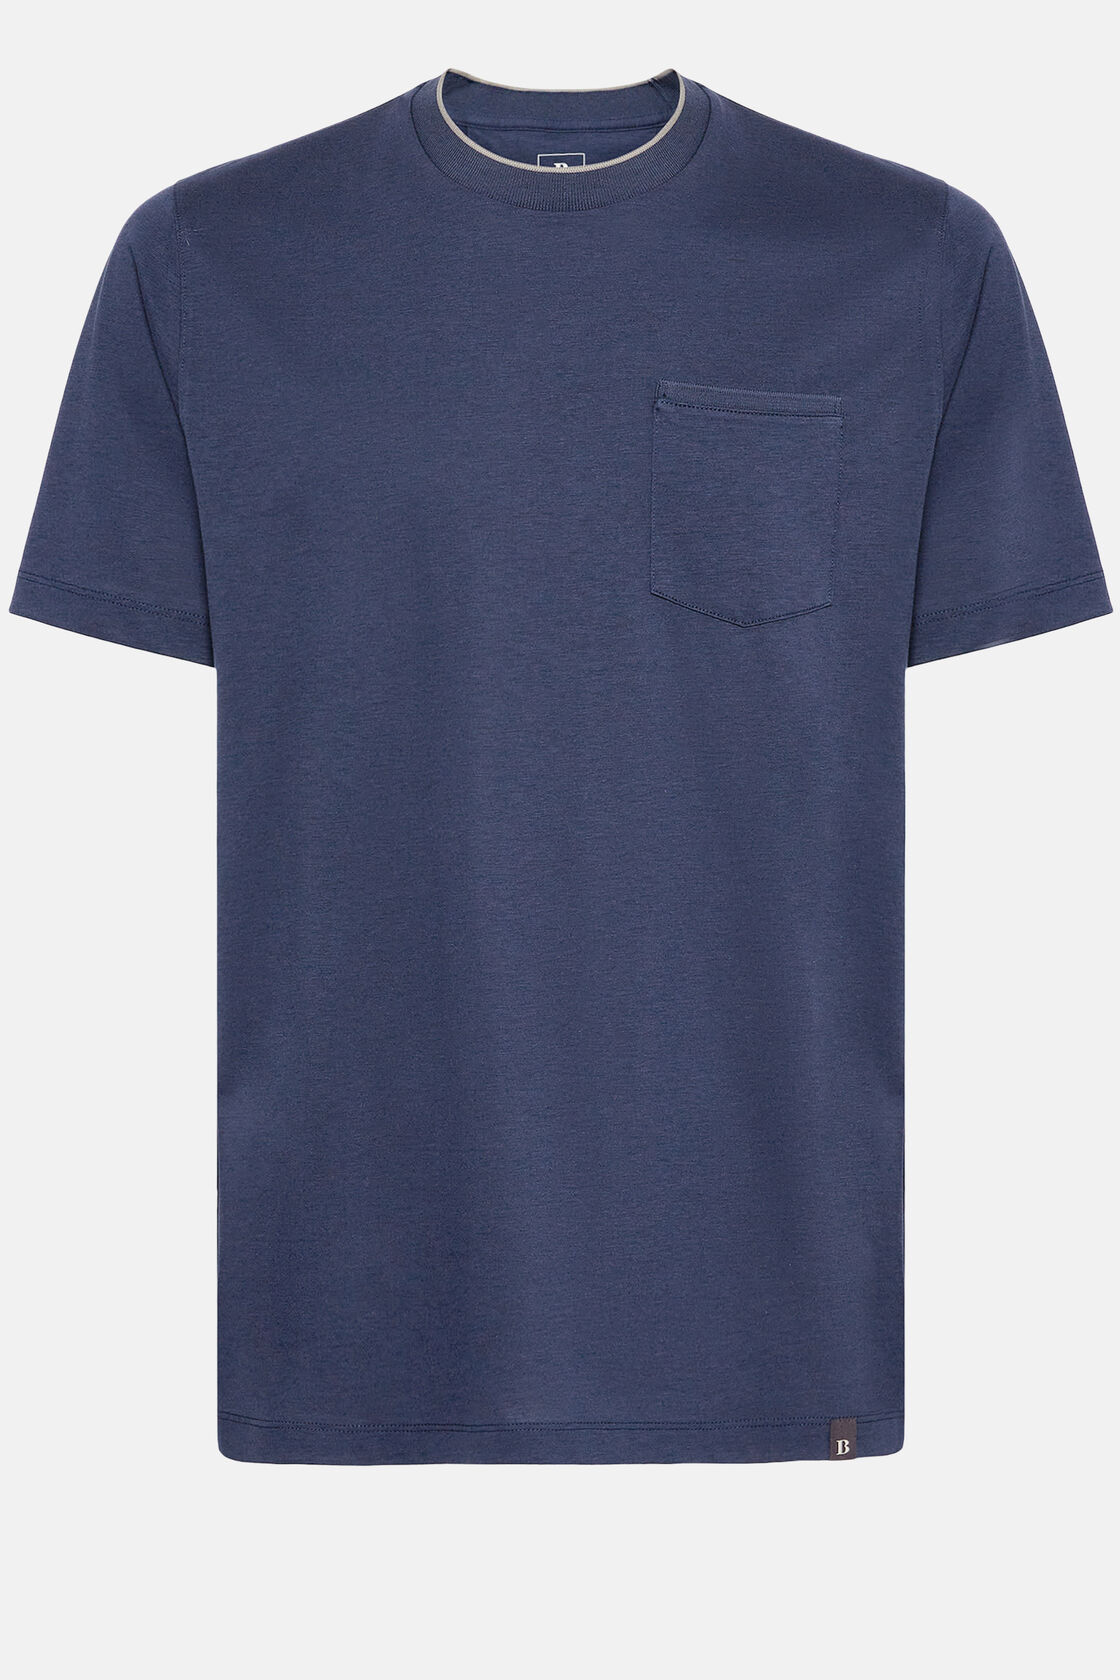 T-shirt z dżerseju z bawełny i Tencelu, Navy blue, hi-res